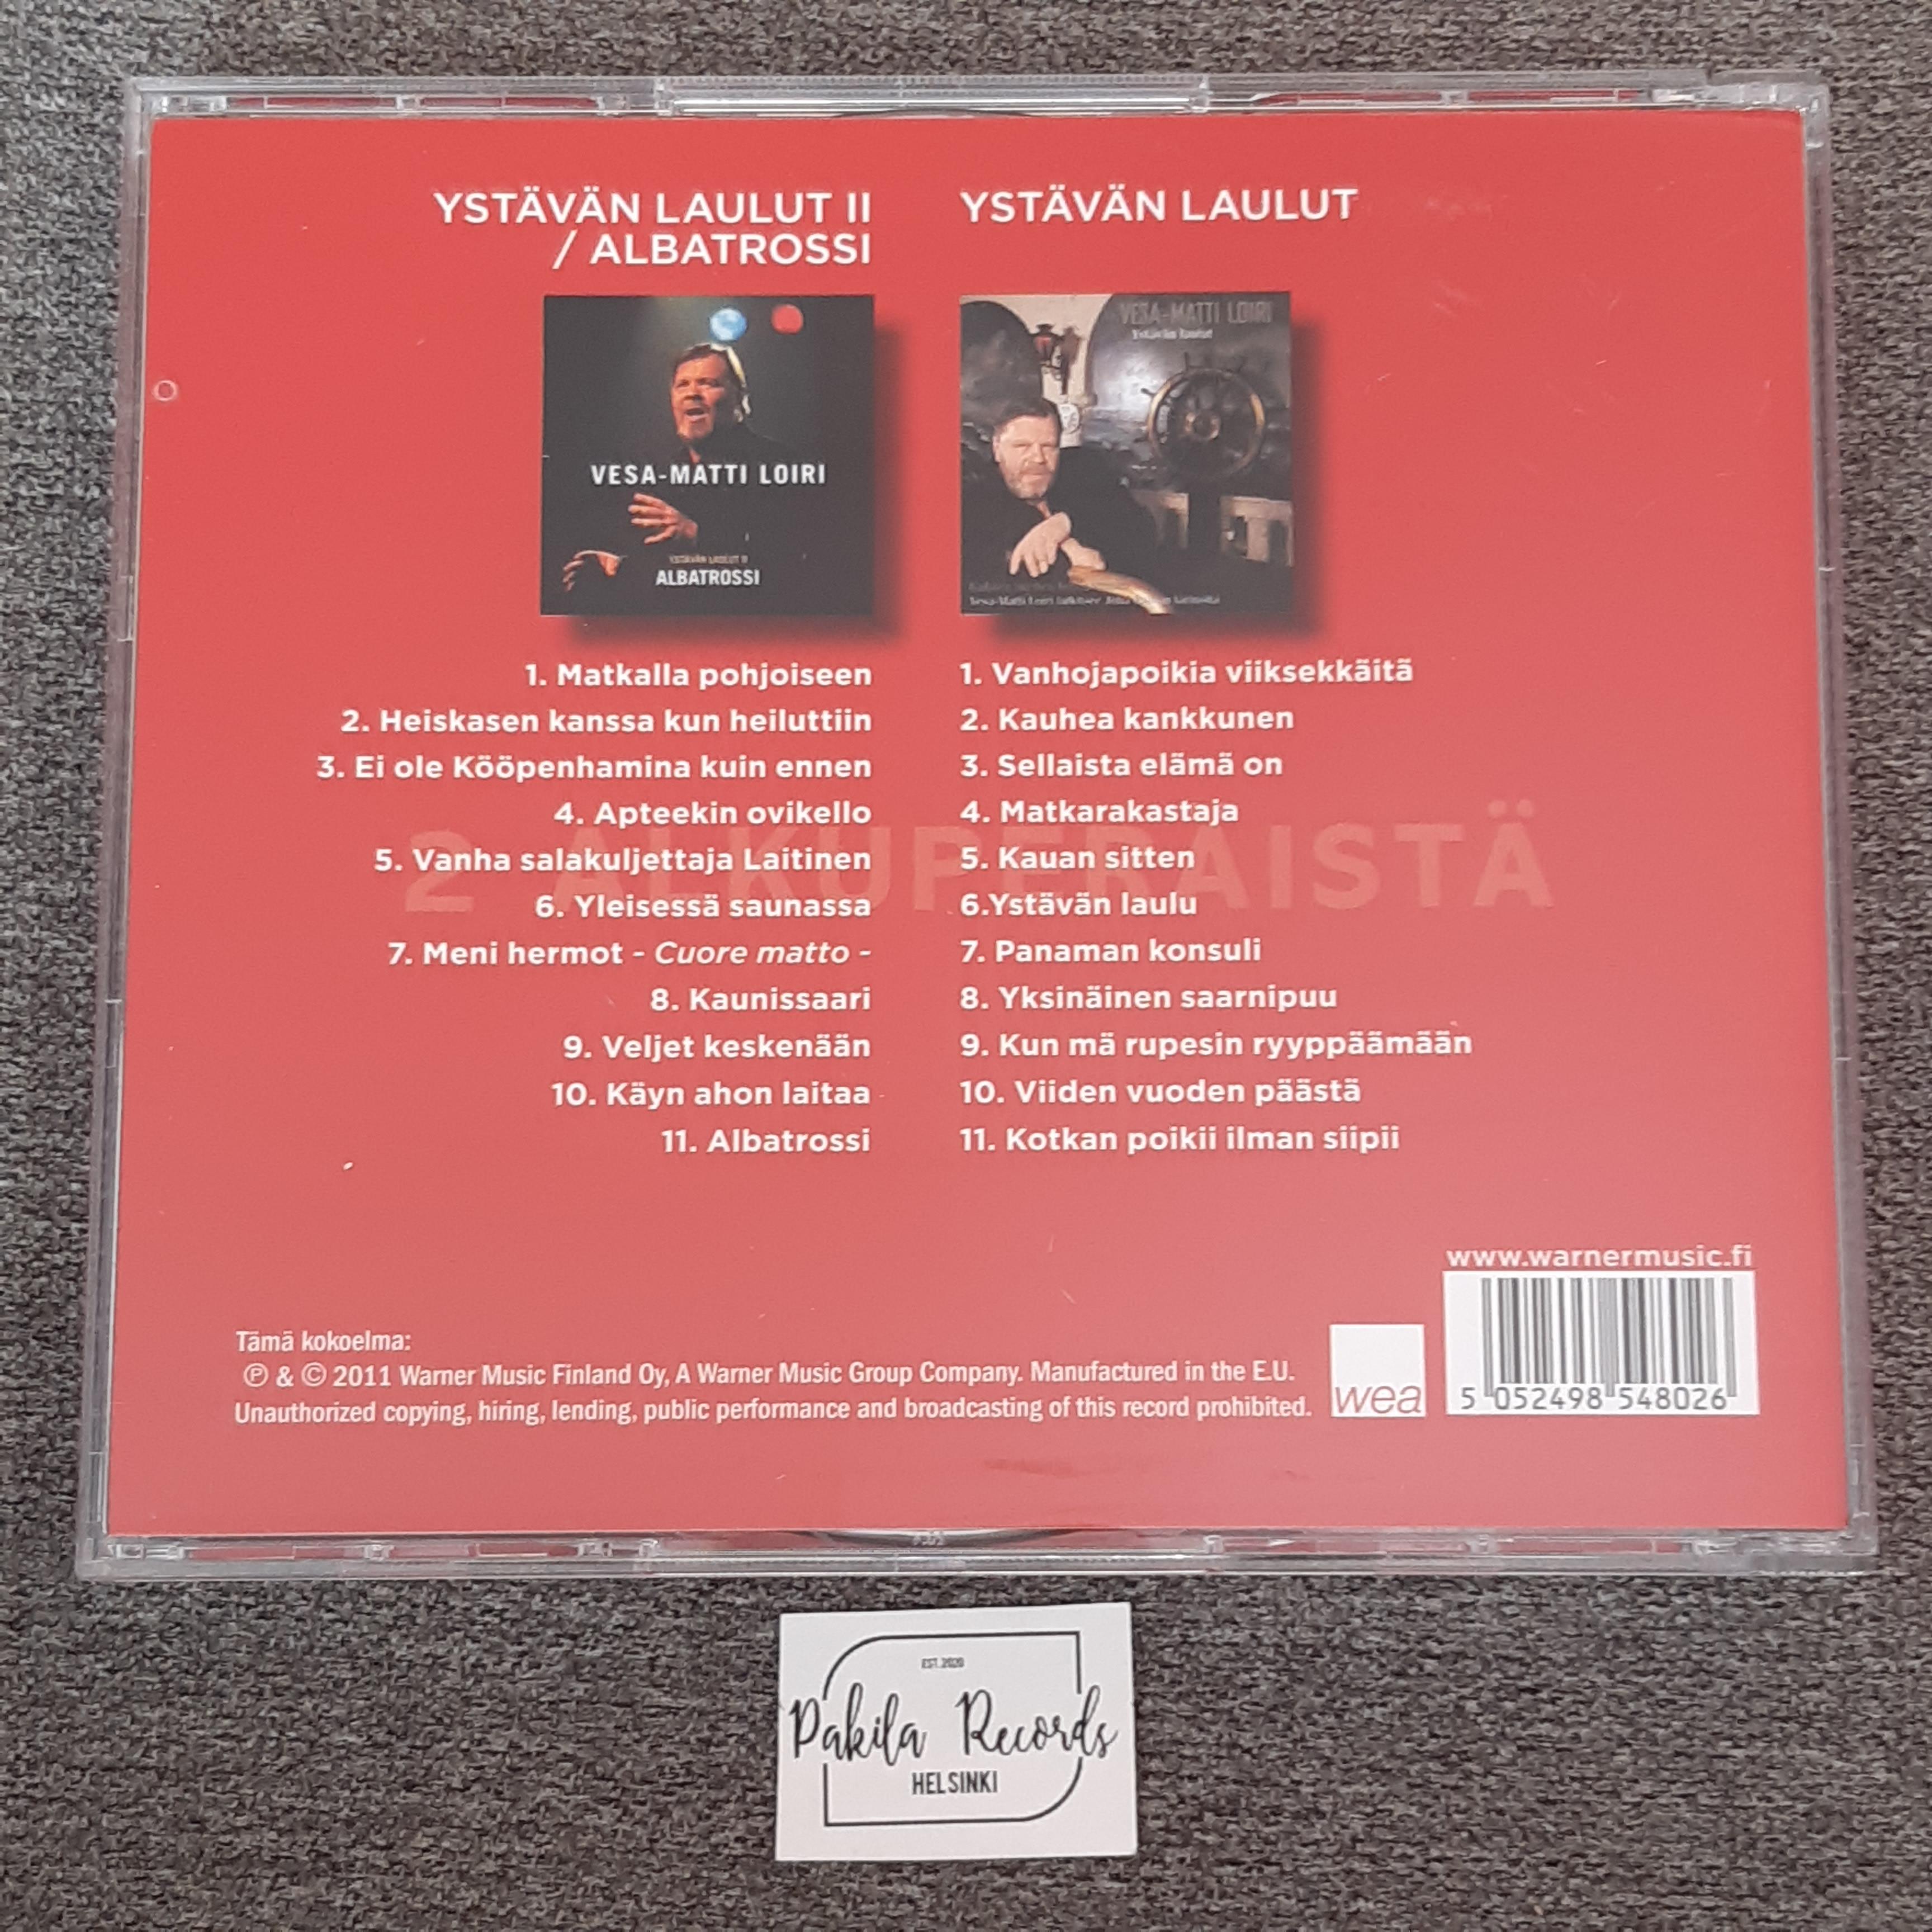 Vesa-Matti Loiri - Ystävän laulut / Ystävän laulut 2, Albatrossi - 2 CD (käytetty)